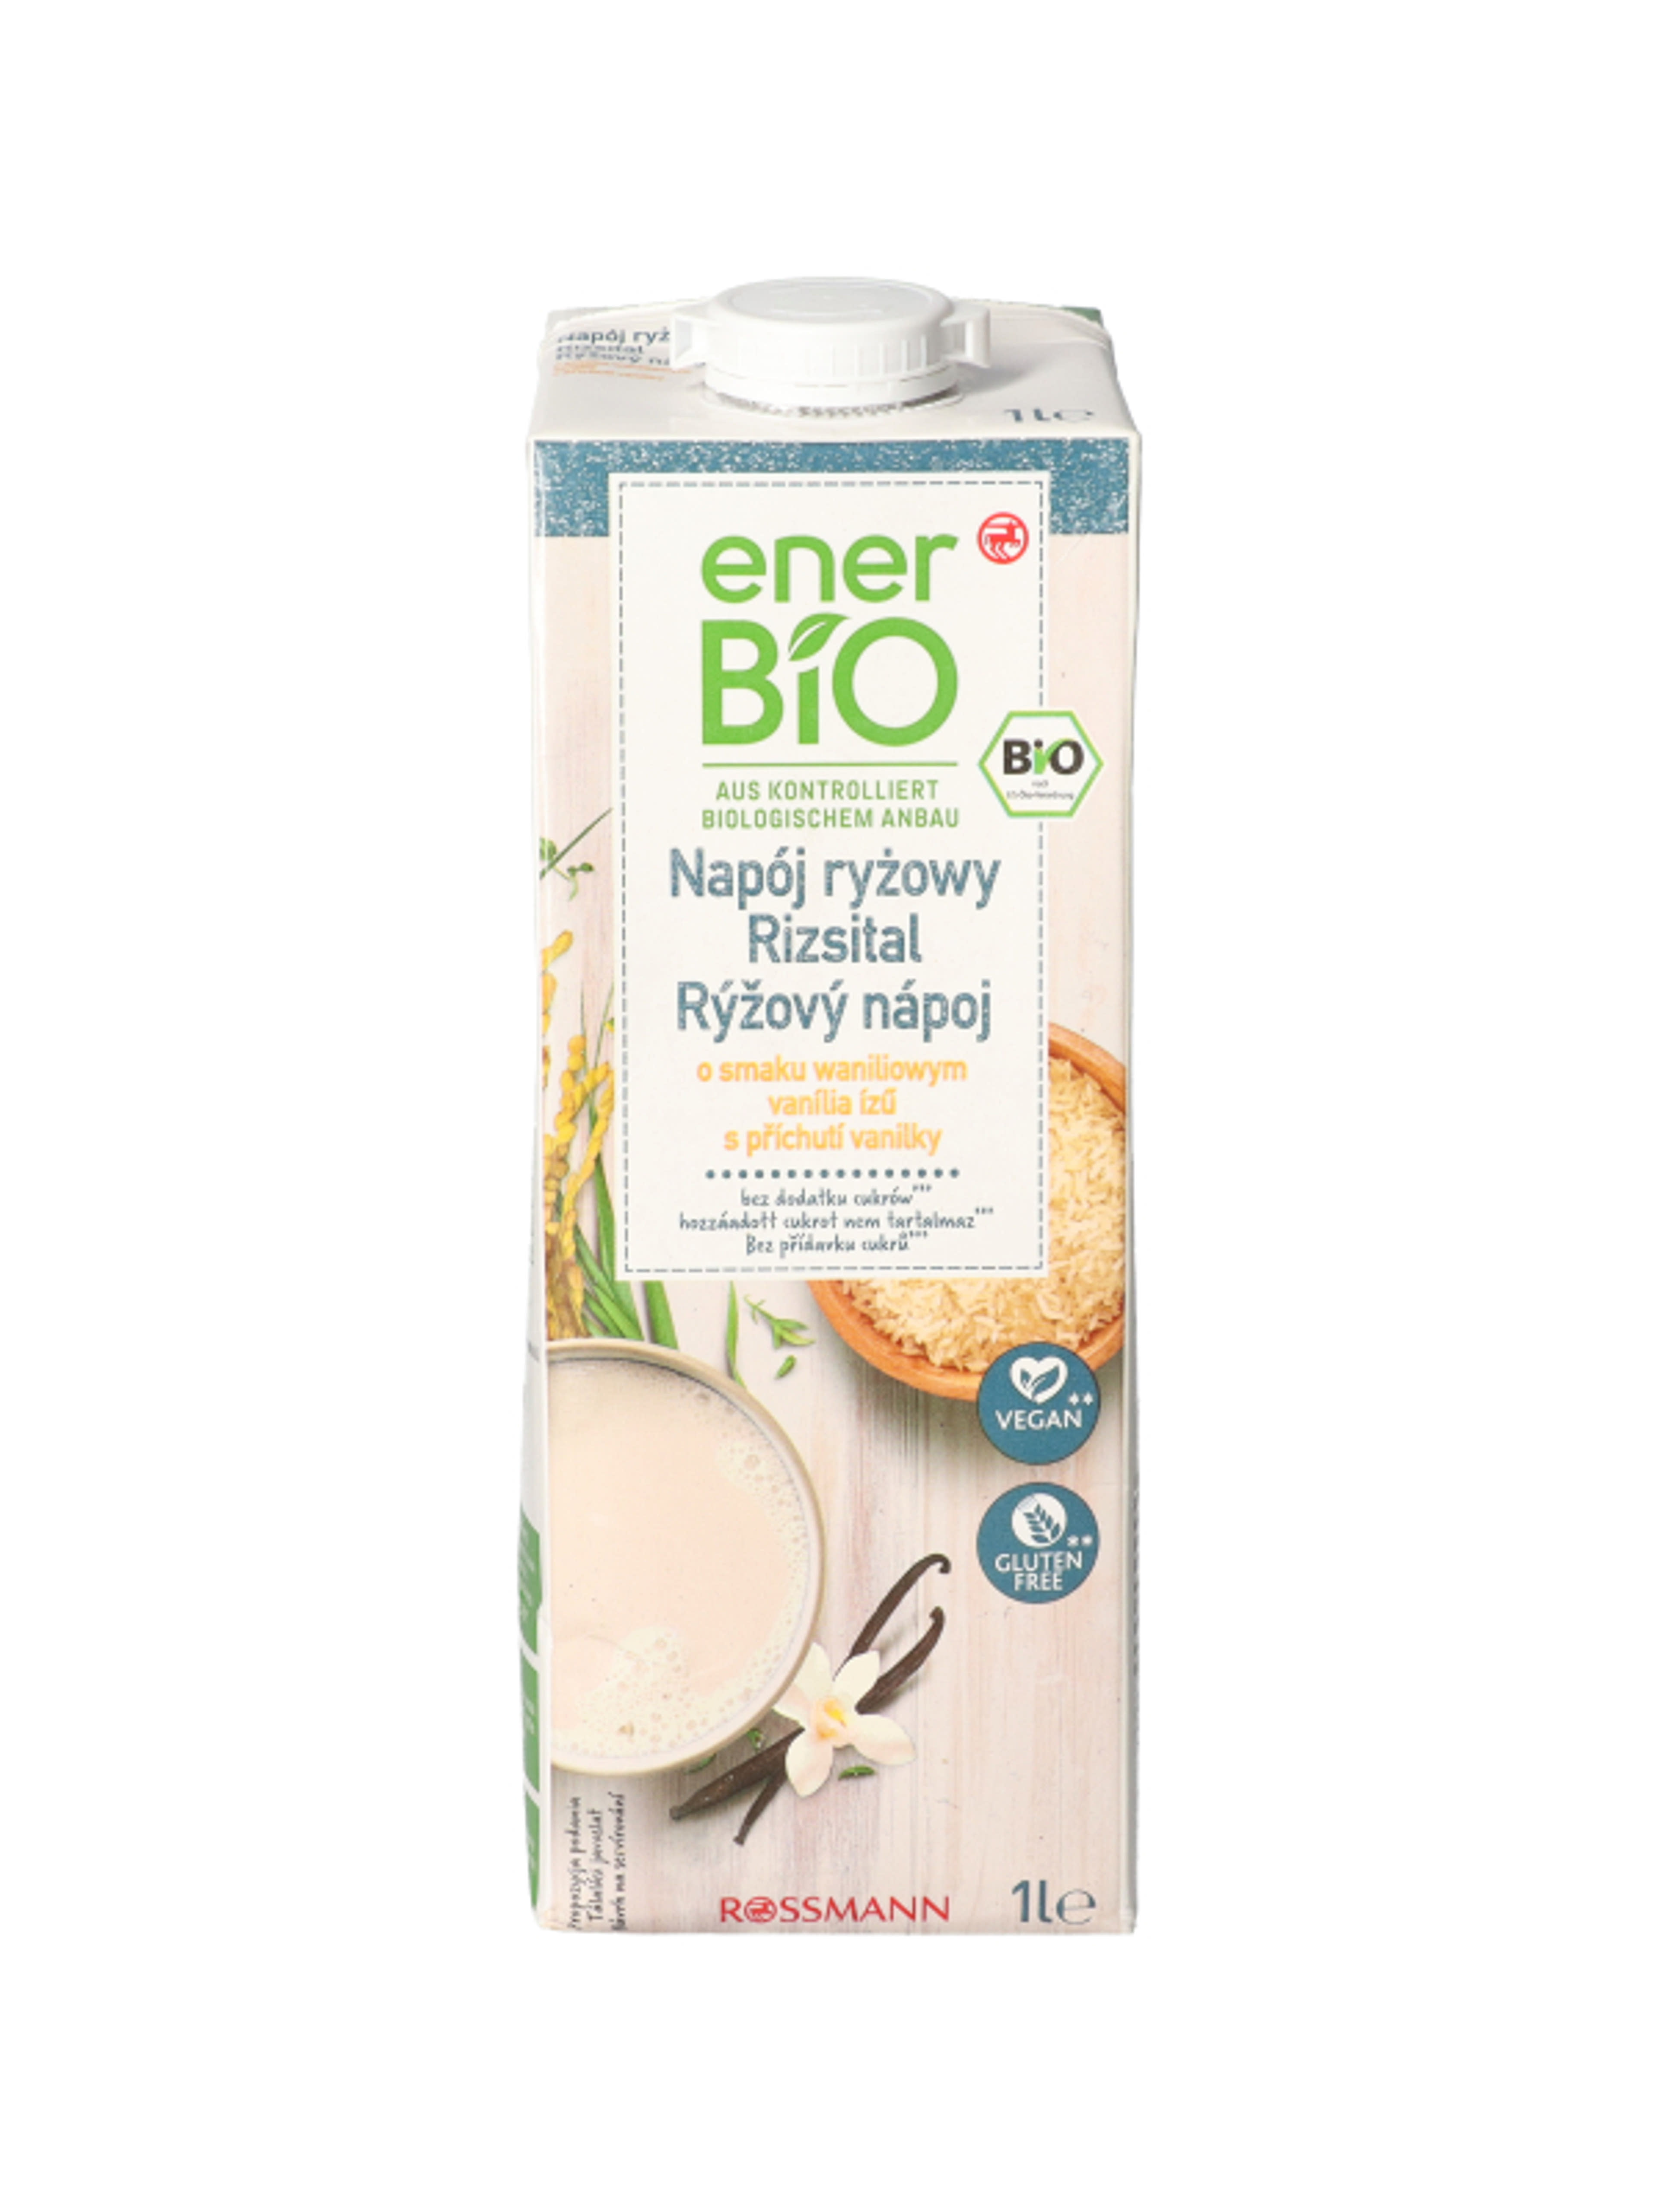 enerBio vaníliás rizsital - 1 l
hozzáadott cukrot nem tartalmaz
vegán és gluténmentes